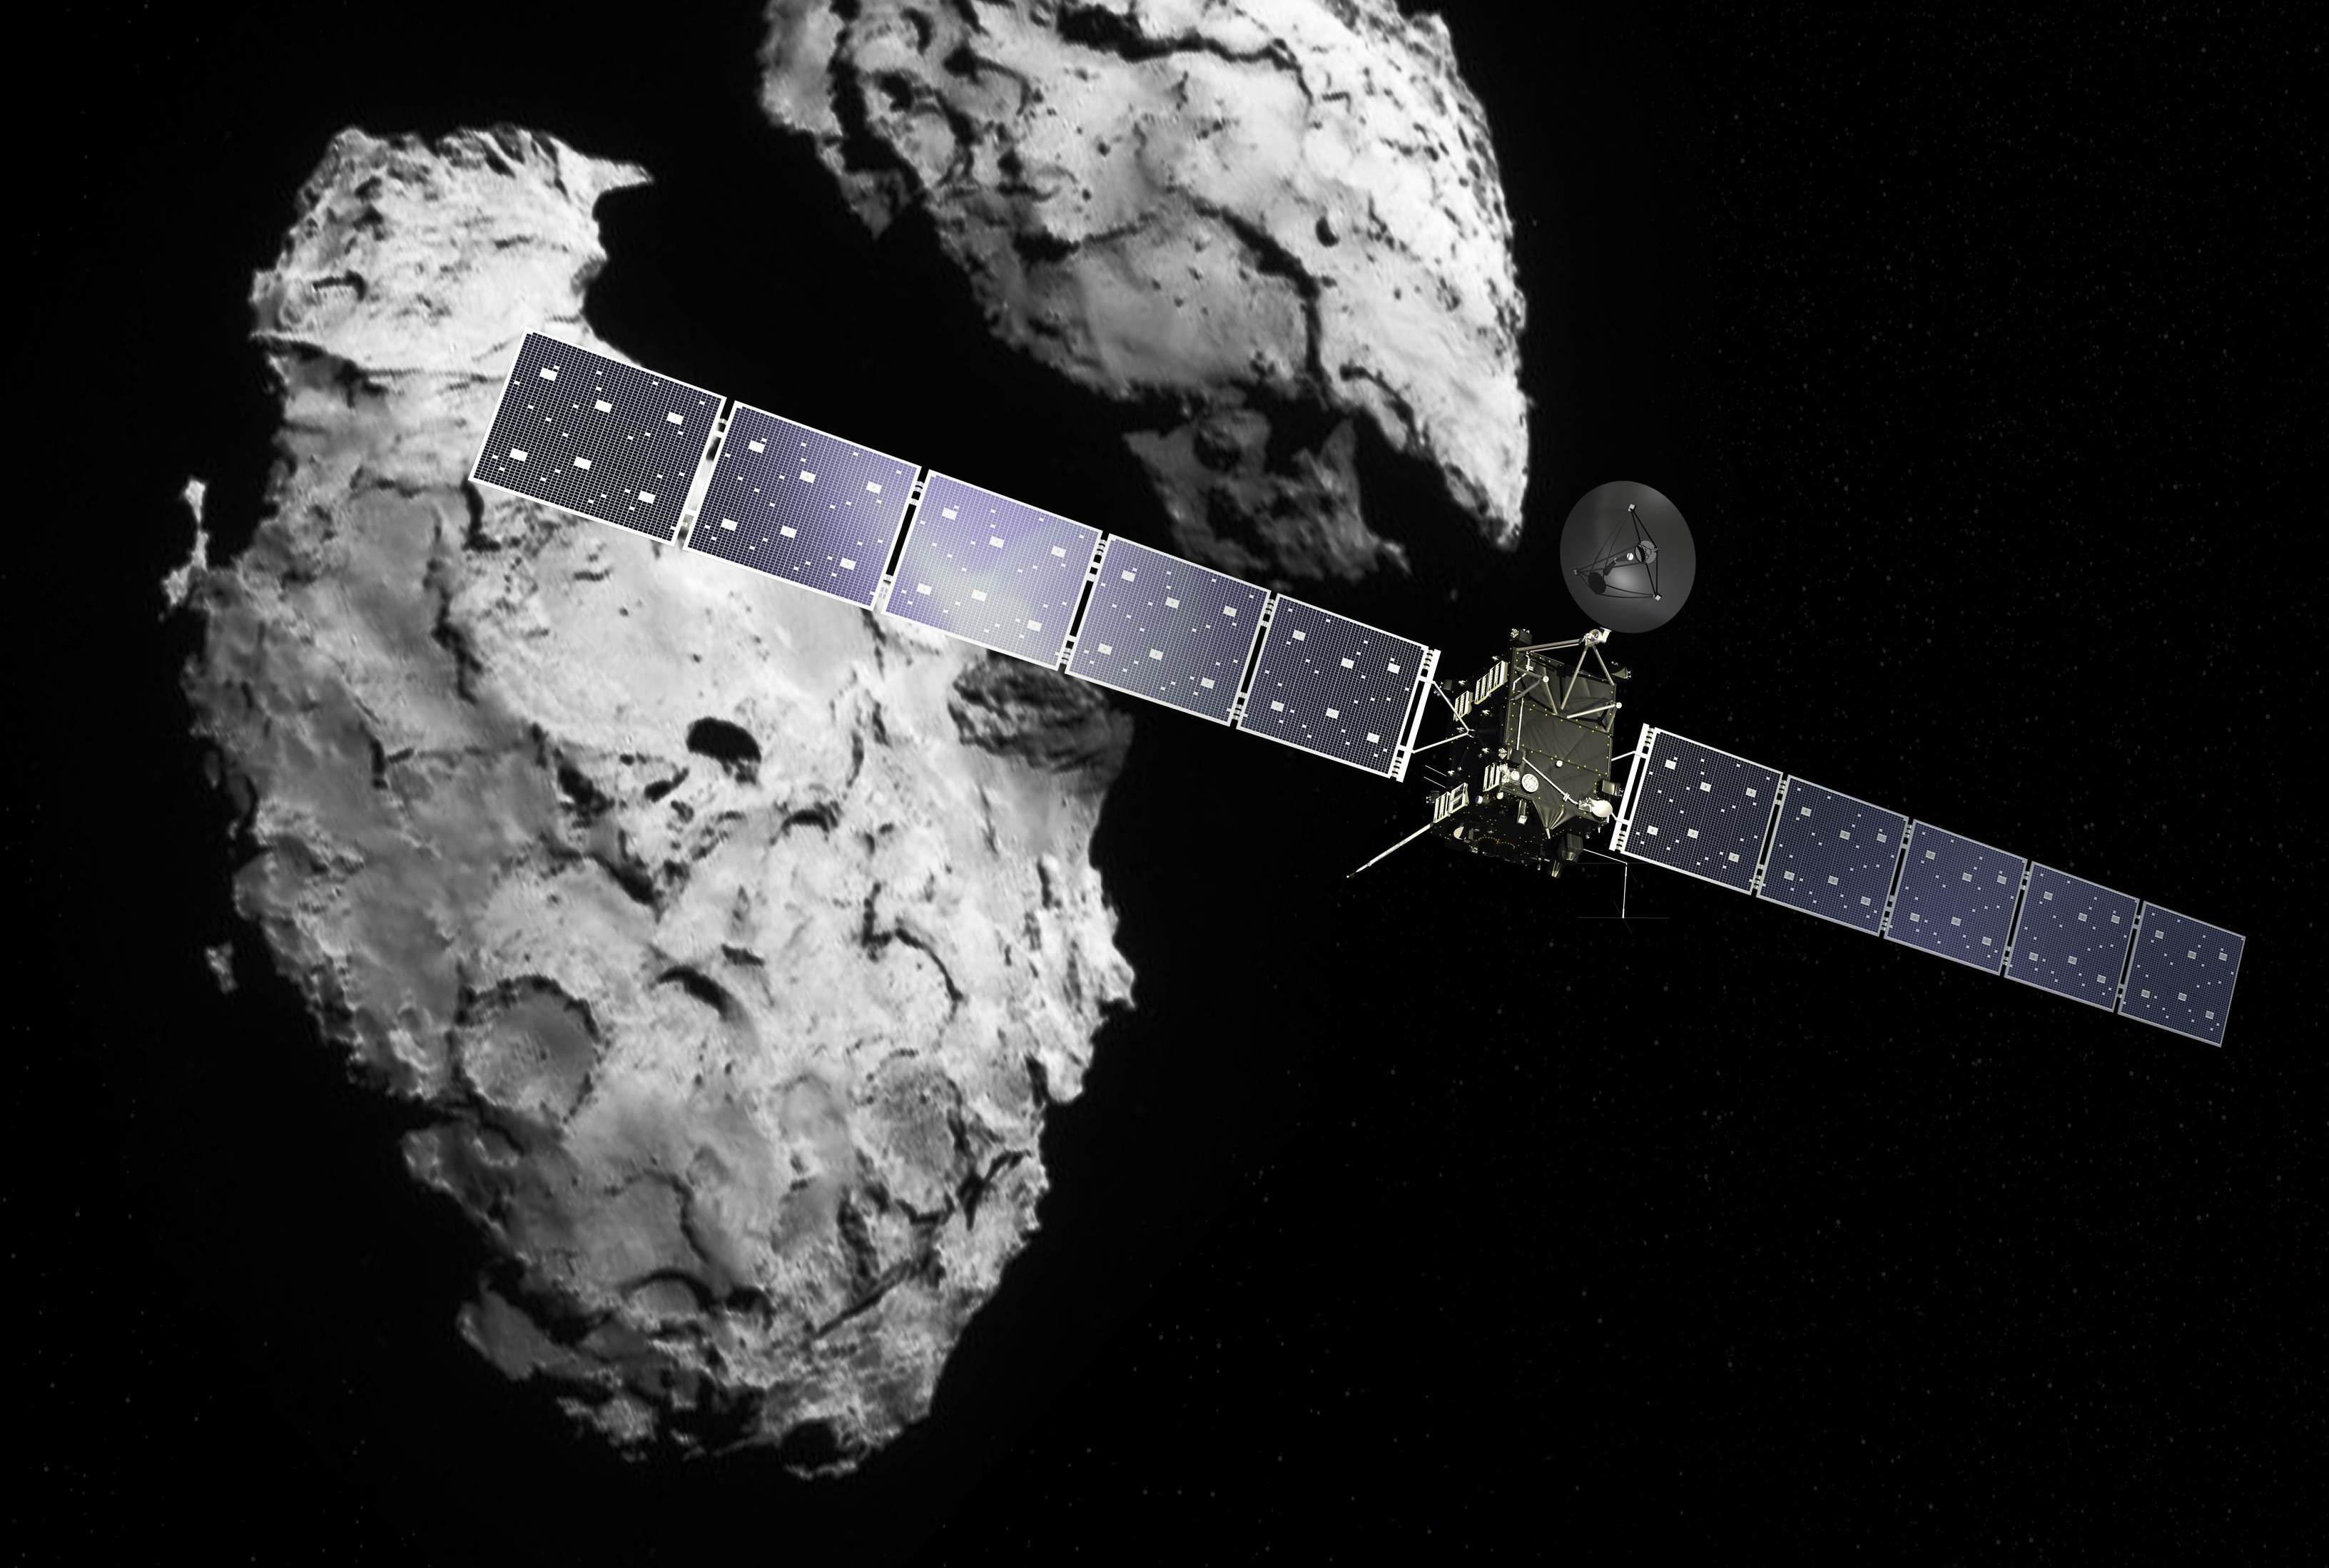 Die Rosetta-Raumsonde in Umlaufbahn um den Kometen 67P/Churyumov-Gerasimenko. Mit dabei: Das Massenspektrometer ROSINA, eines der Schlüsselexperimente der Mission.  (Credit: ESA / ATG medialab / Rosetta / Navcam).